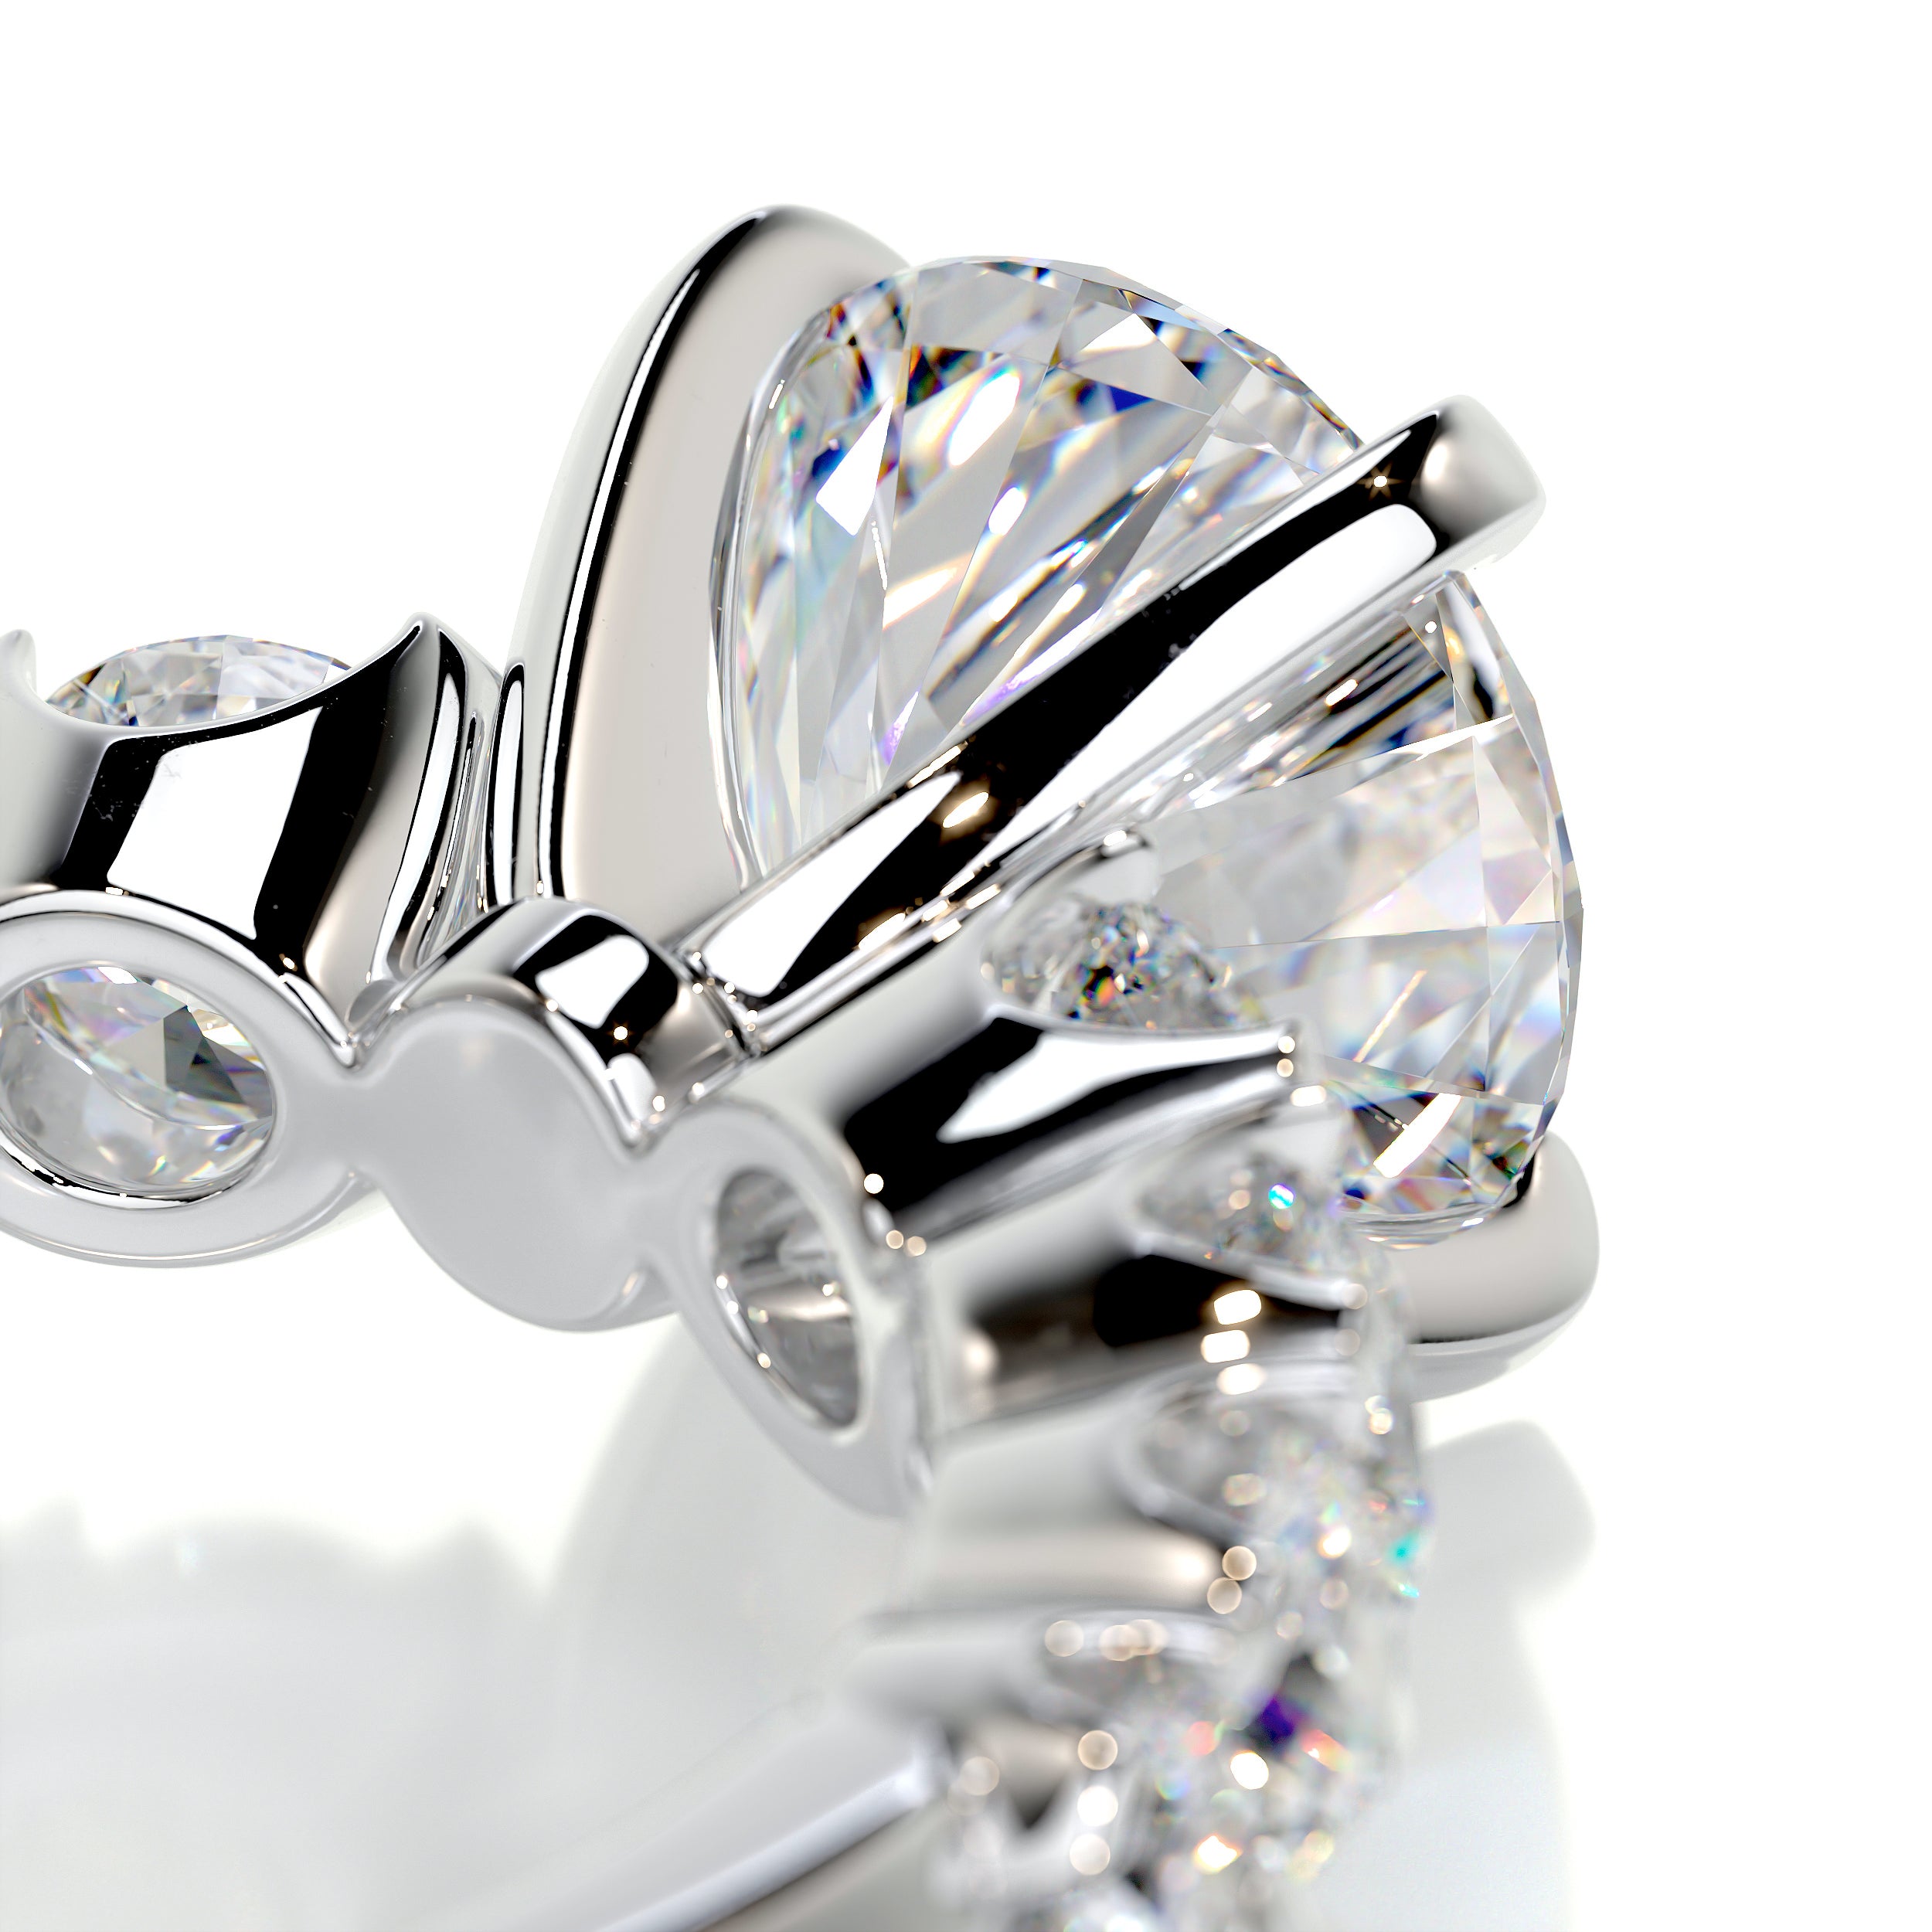 Mai Moissanite & Diamonds Ring   (3 Carat) -Platinum